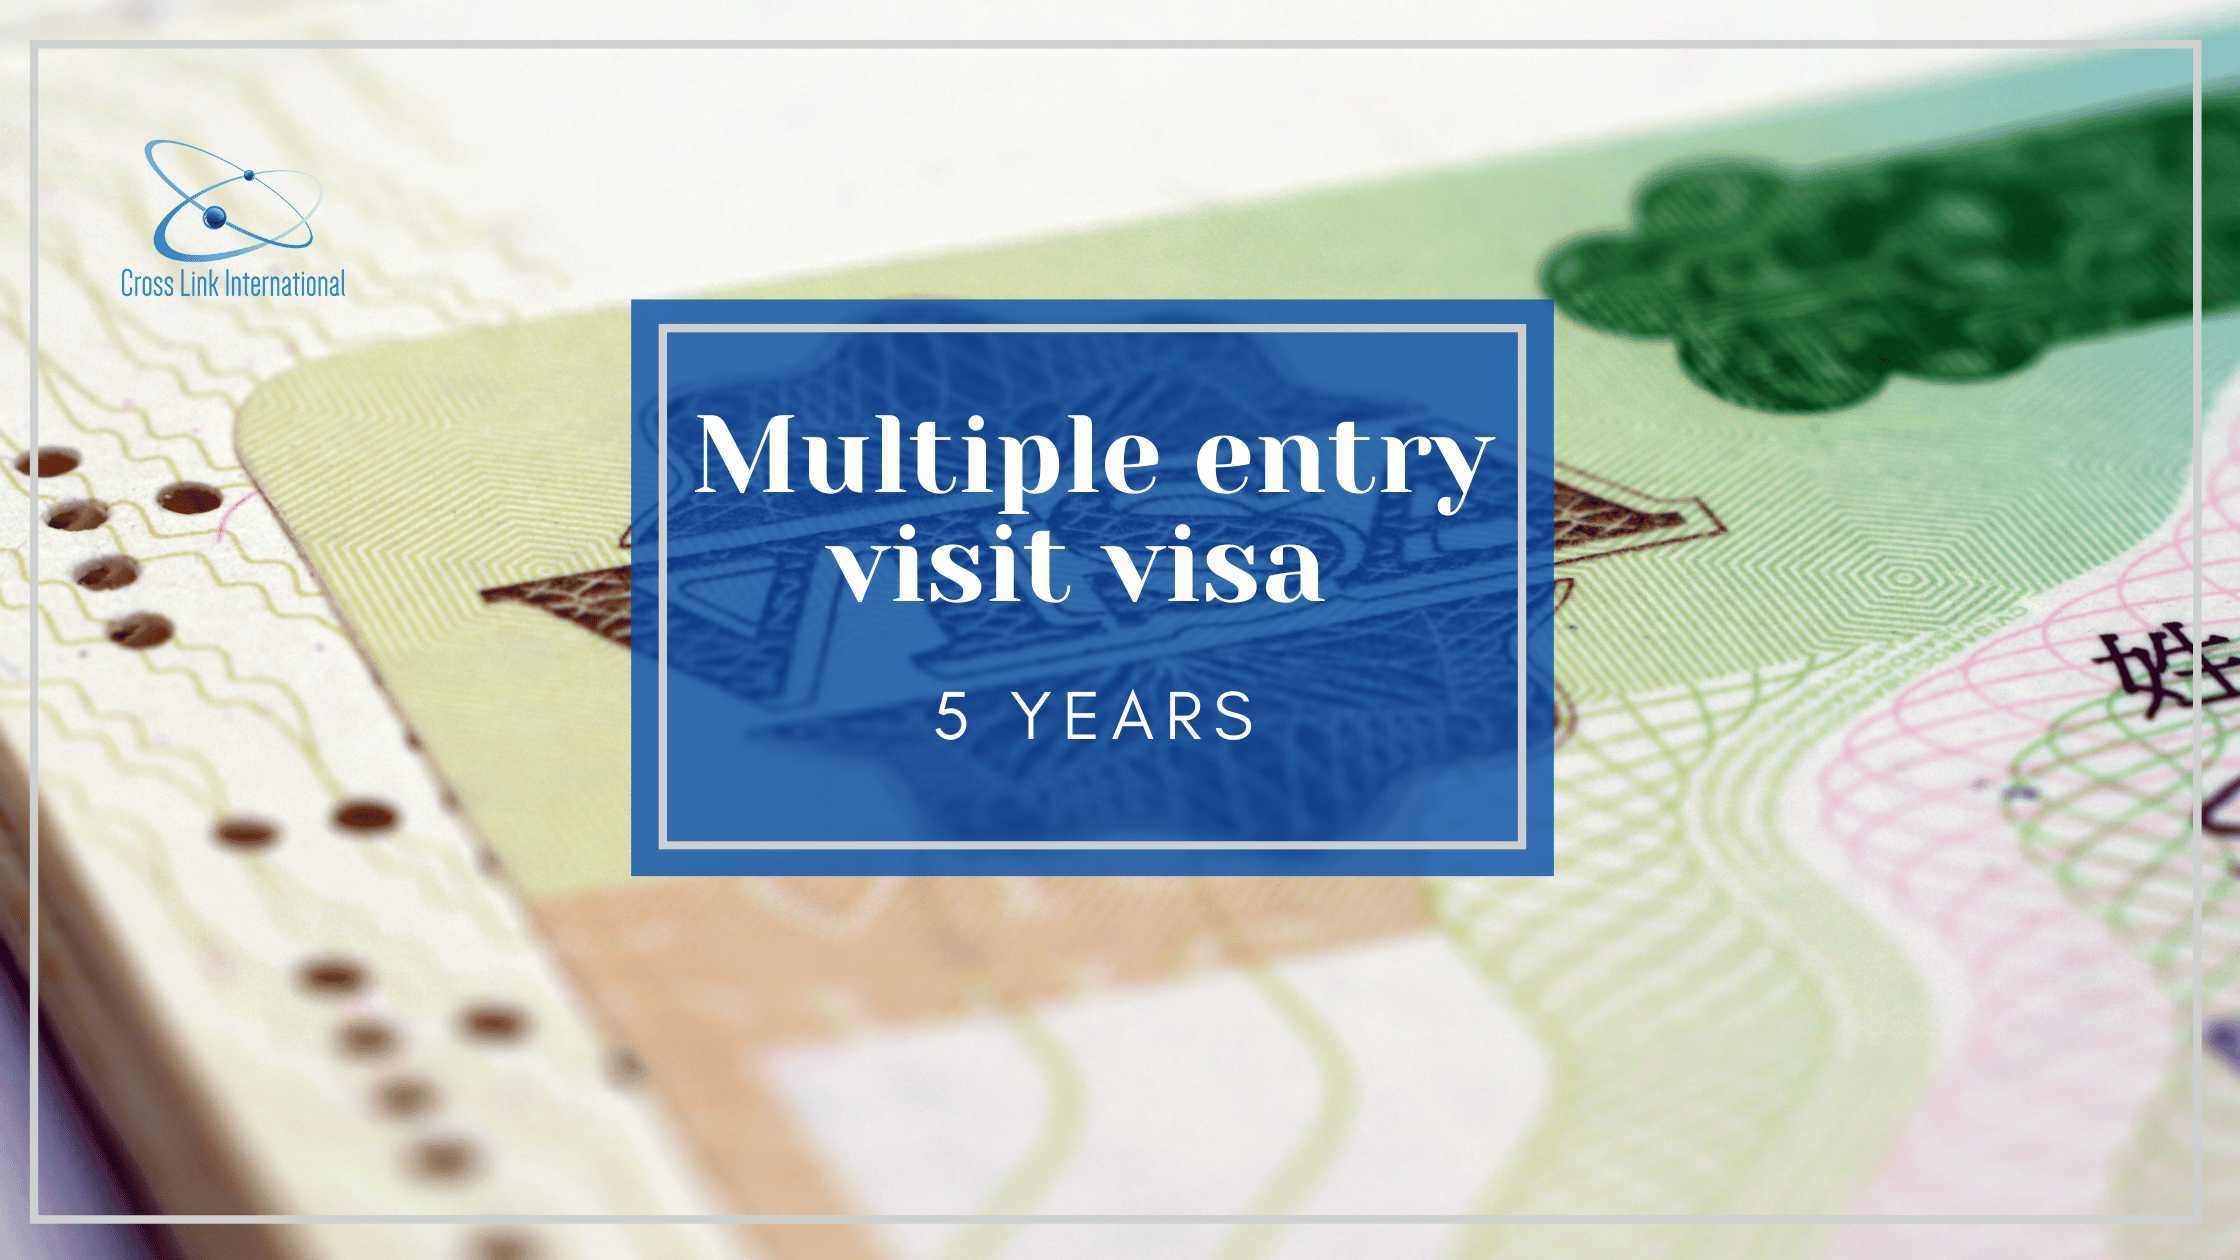 c visit visa uk multiple entry